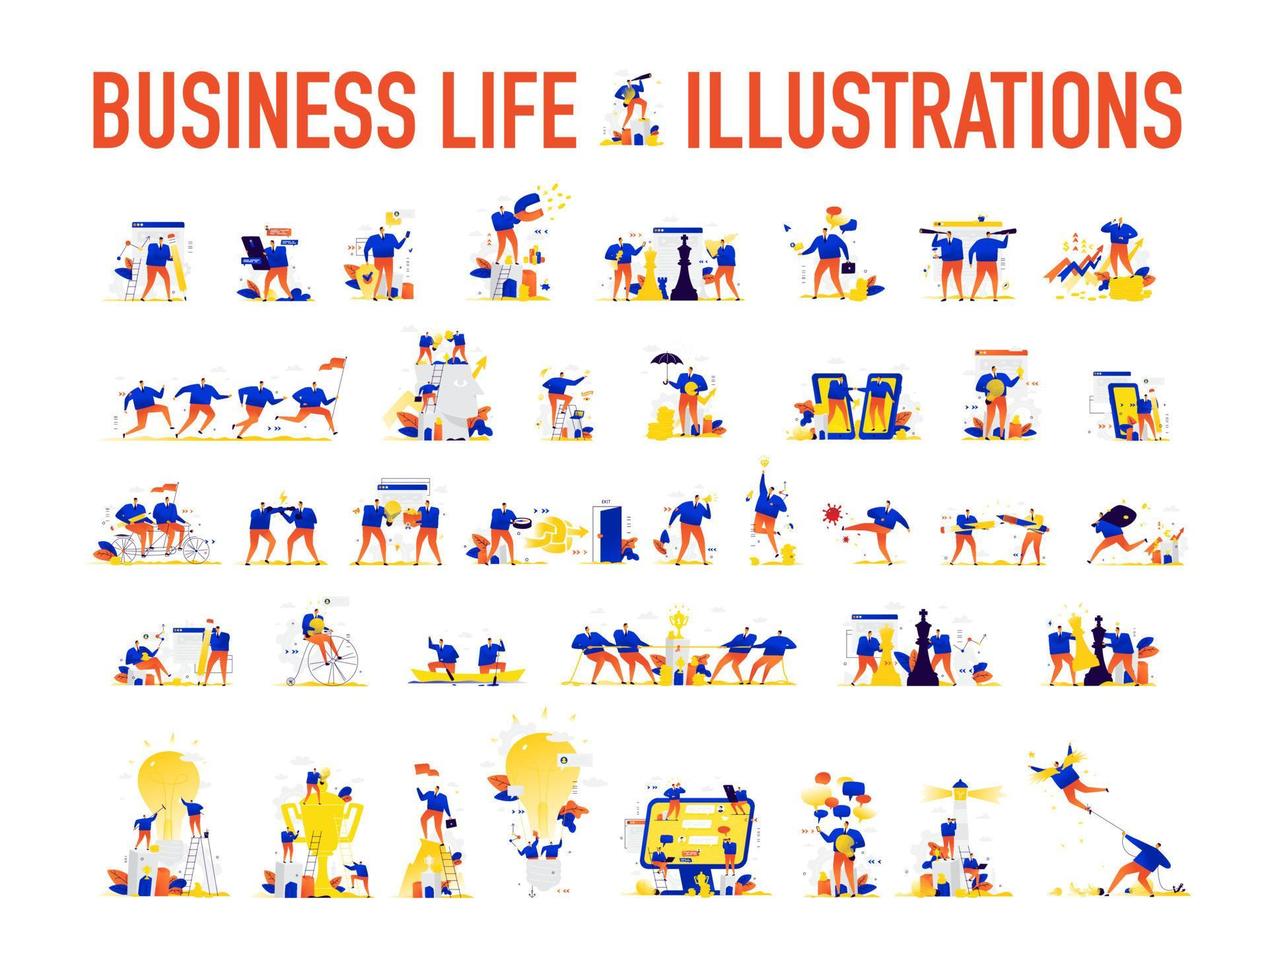 illustrationer av affärsmän i olika situationer vektor